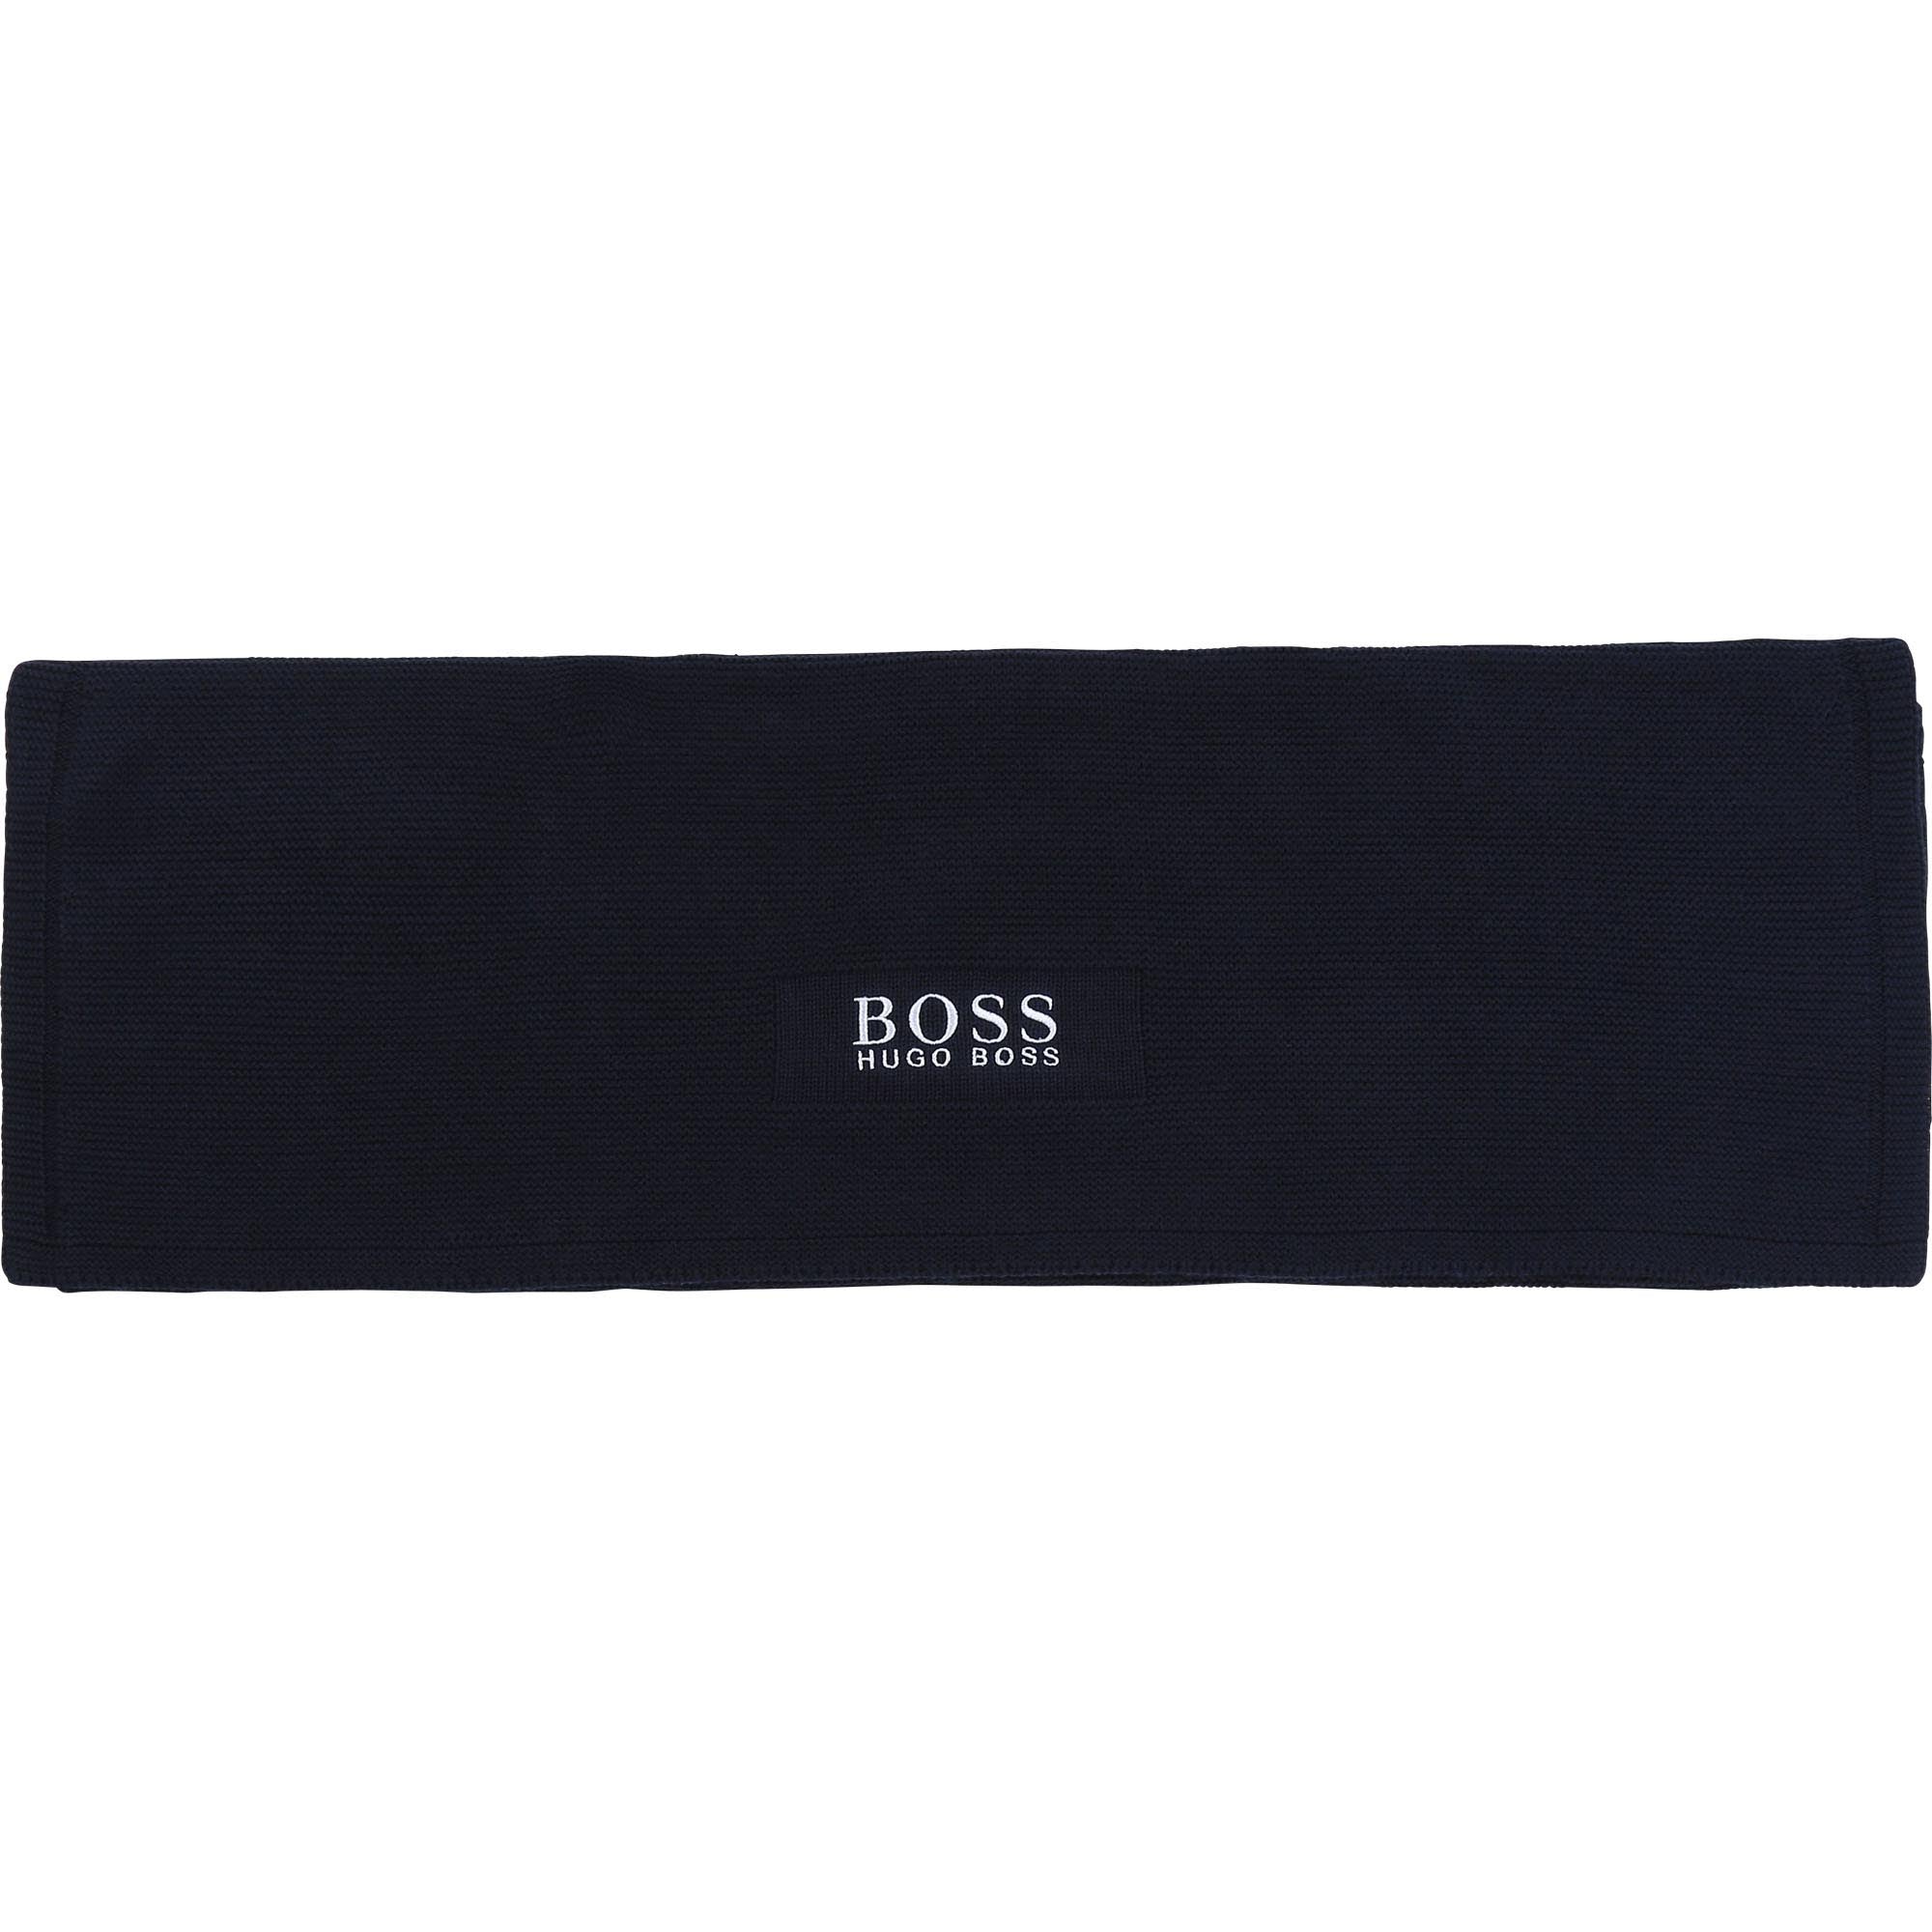 Boss Baby Blanket - J9016A